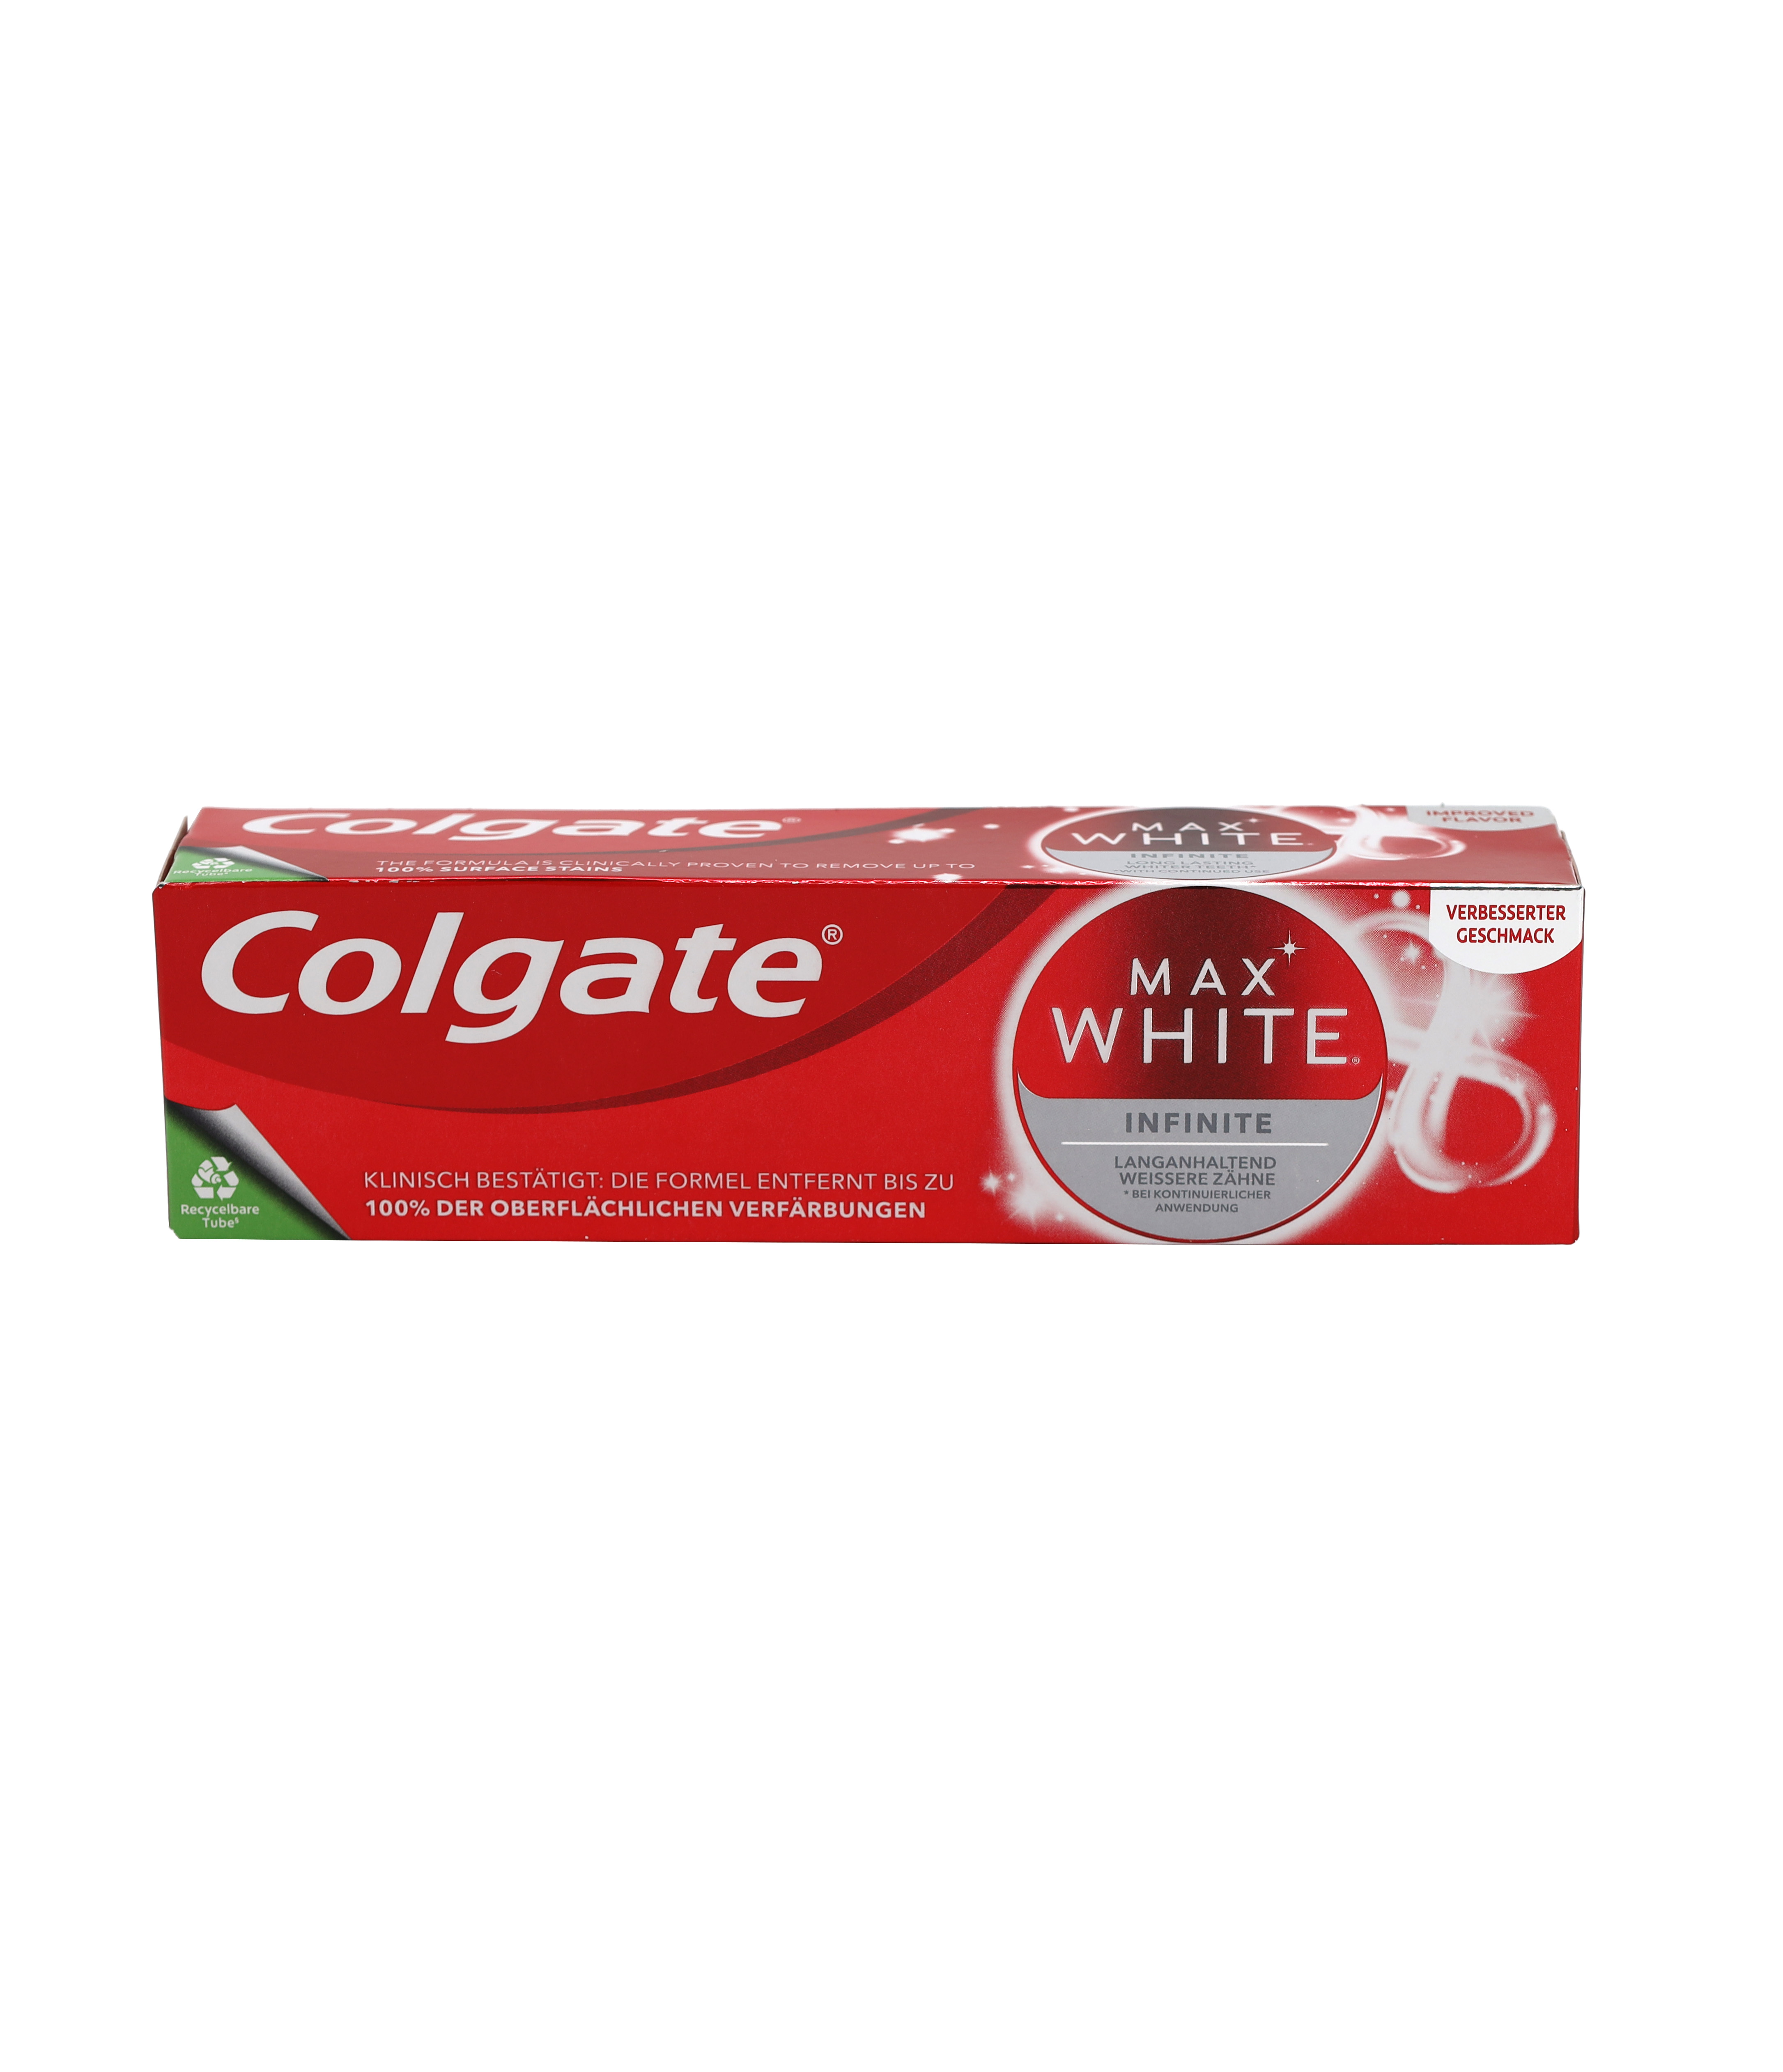 Colgate Zahnpasta Max White Infinite 75ml